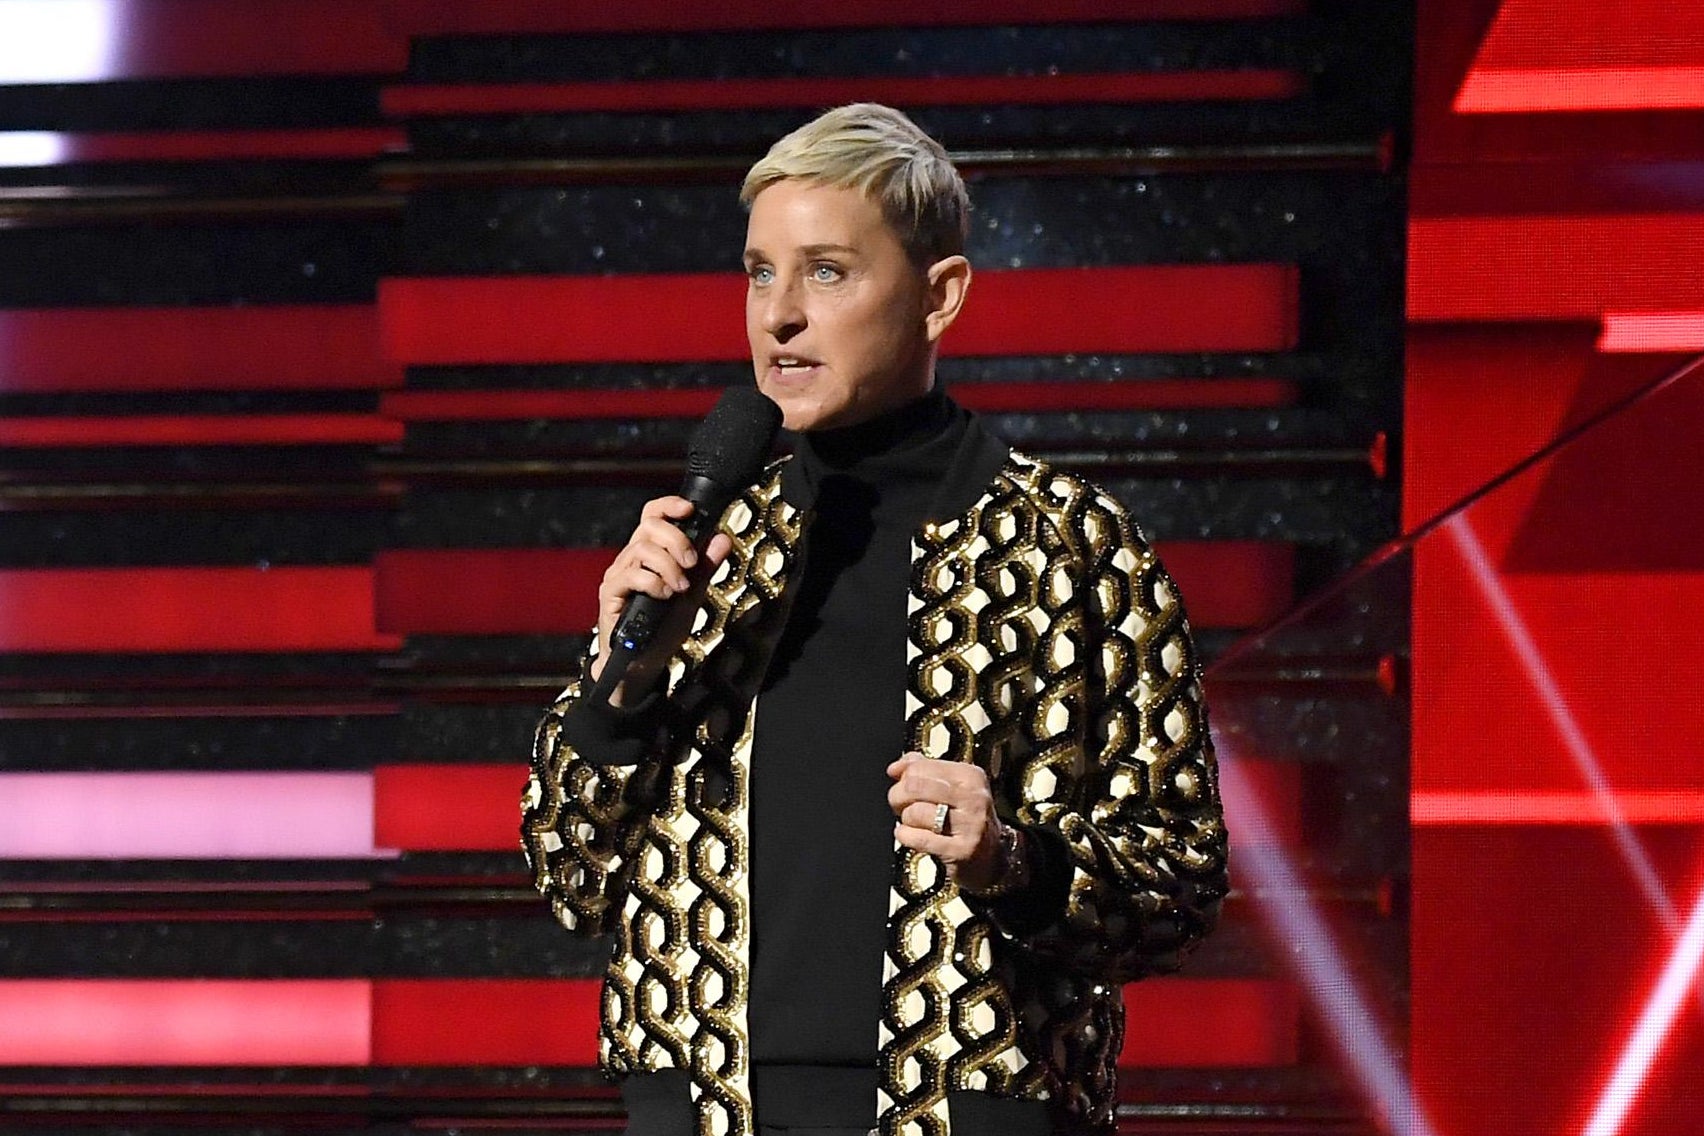 Ellen speaks onstage, holding a mic